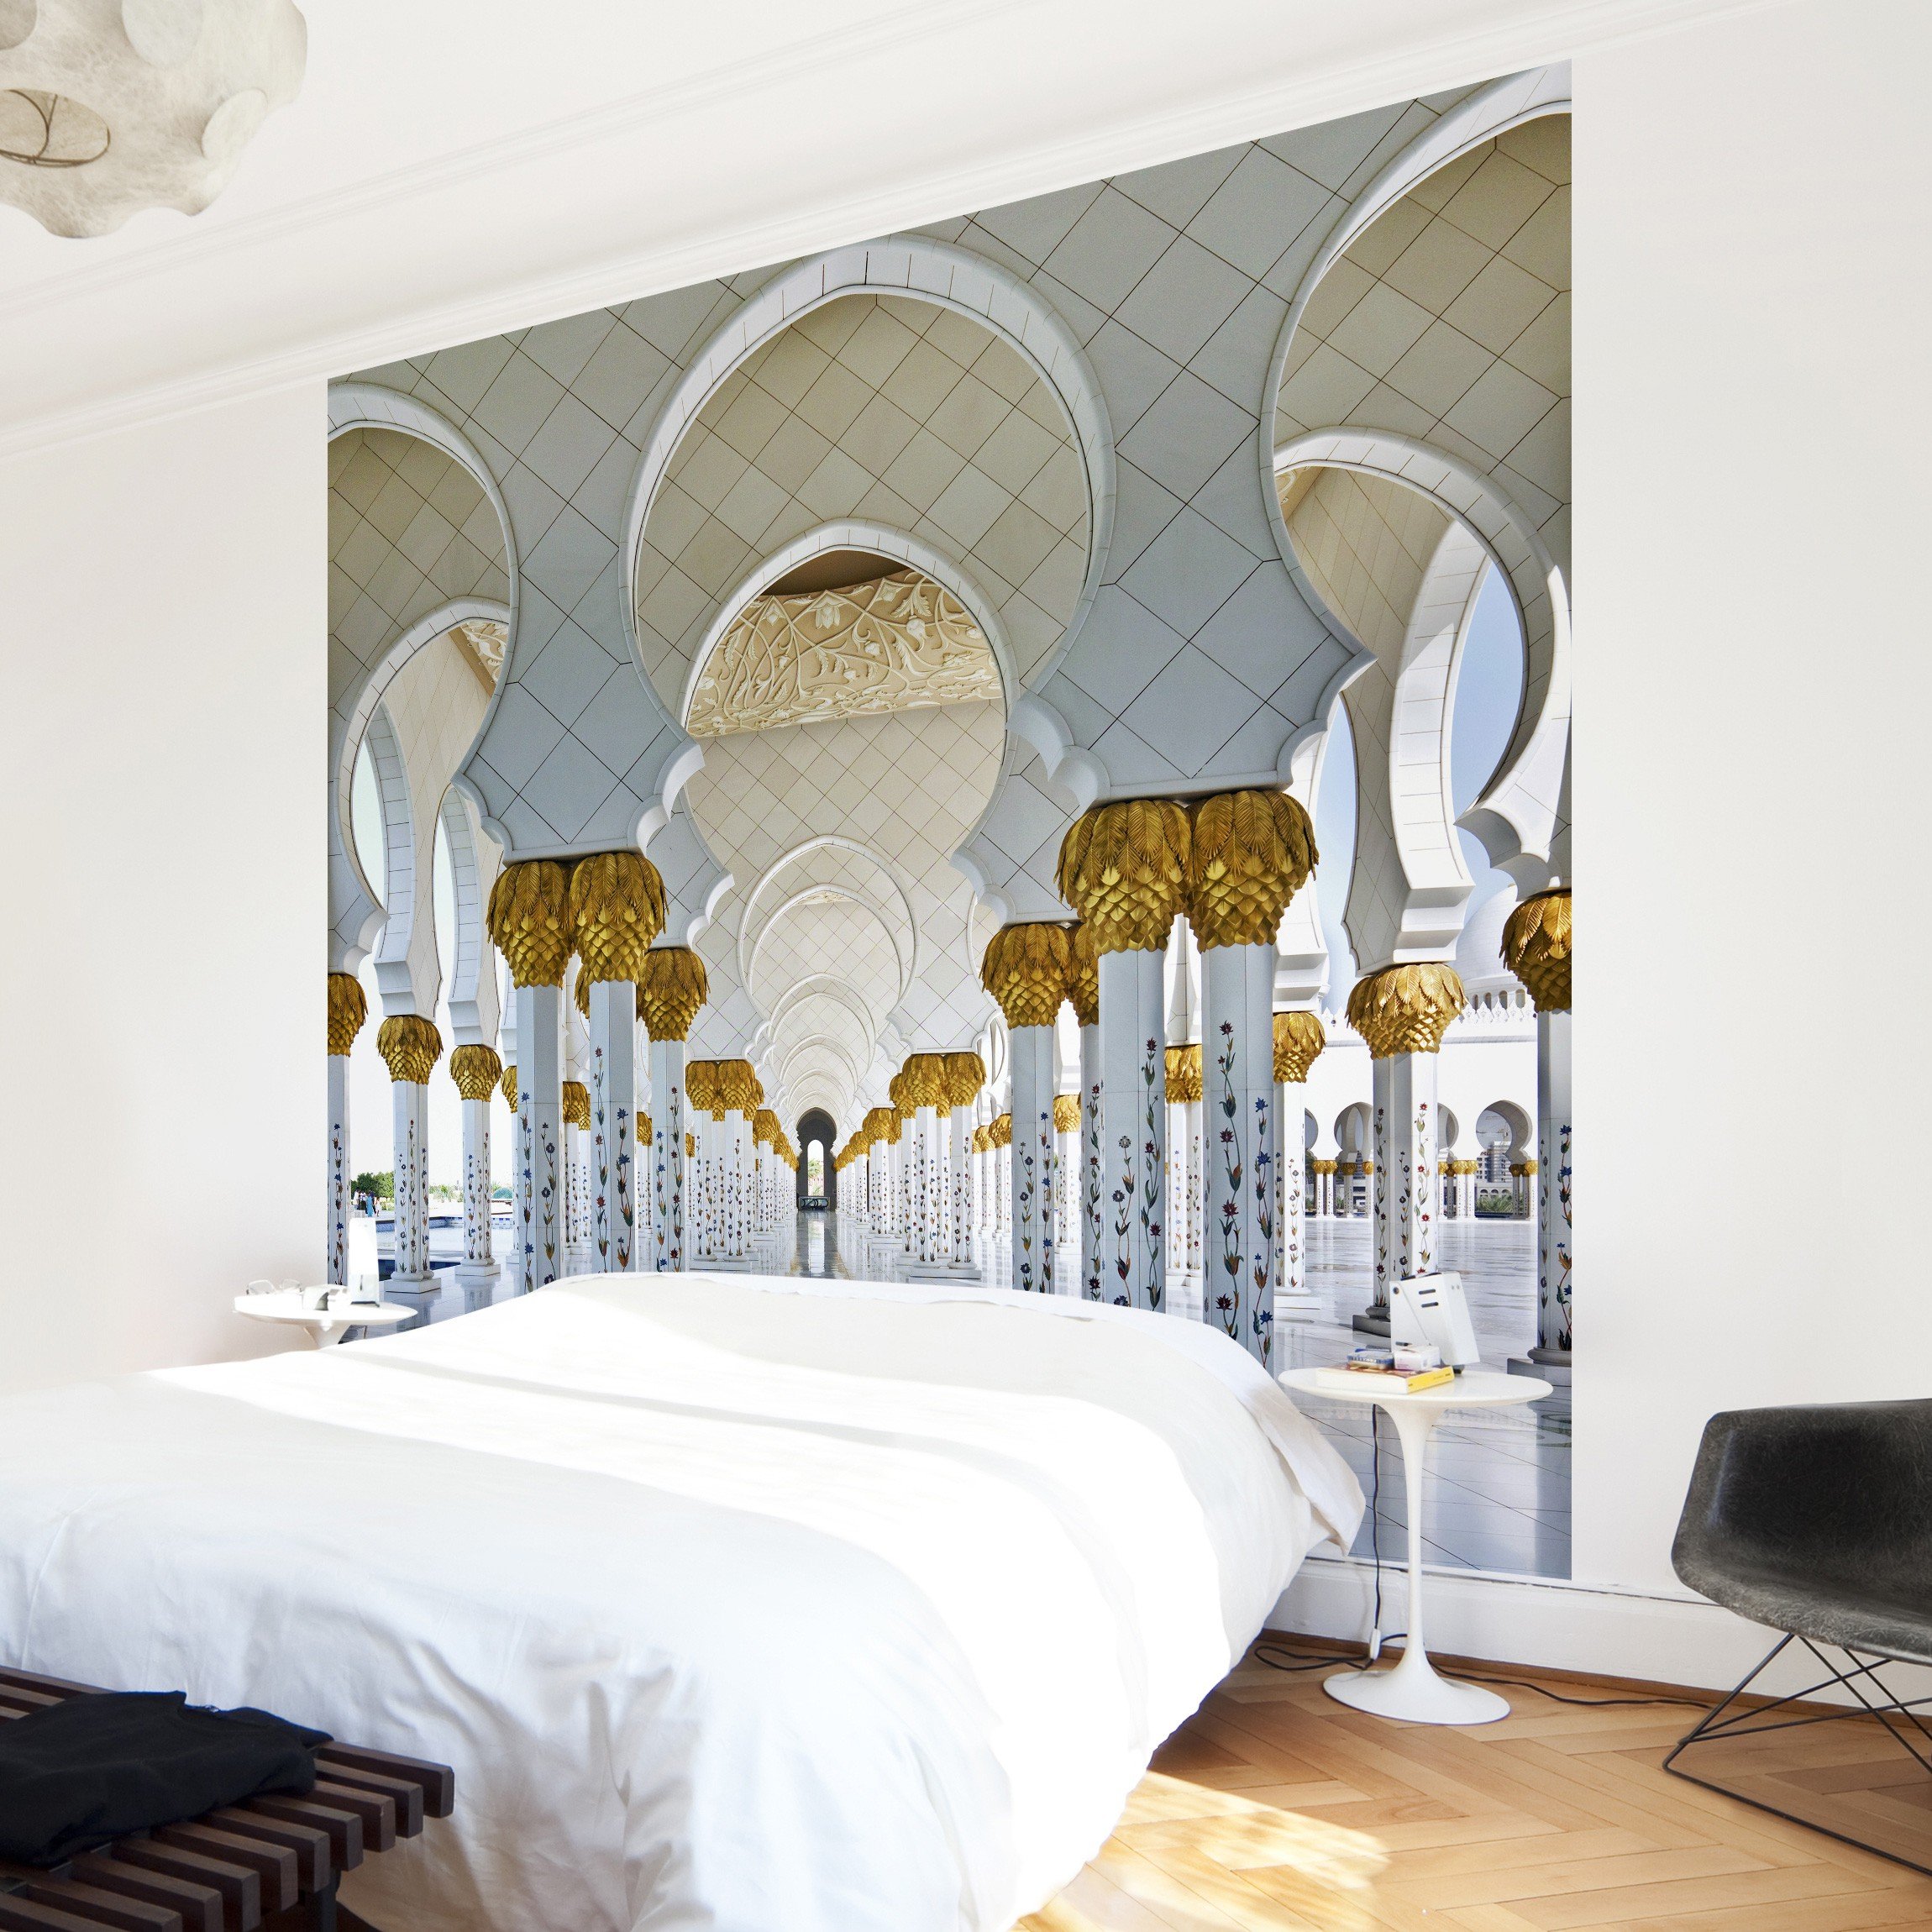 Apalis Vliestapete Moschee in Abu Dhabi Fototapete Quadrat | Vlies Tapete Wandtapete Wandbild Foto 3D Fototapete für Schlafzimmer Wohnzimmer Küche | Größe: 288x288 cm, mehrfarbig, 95392